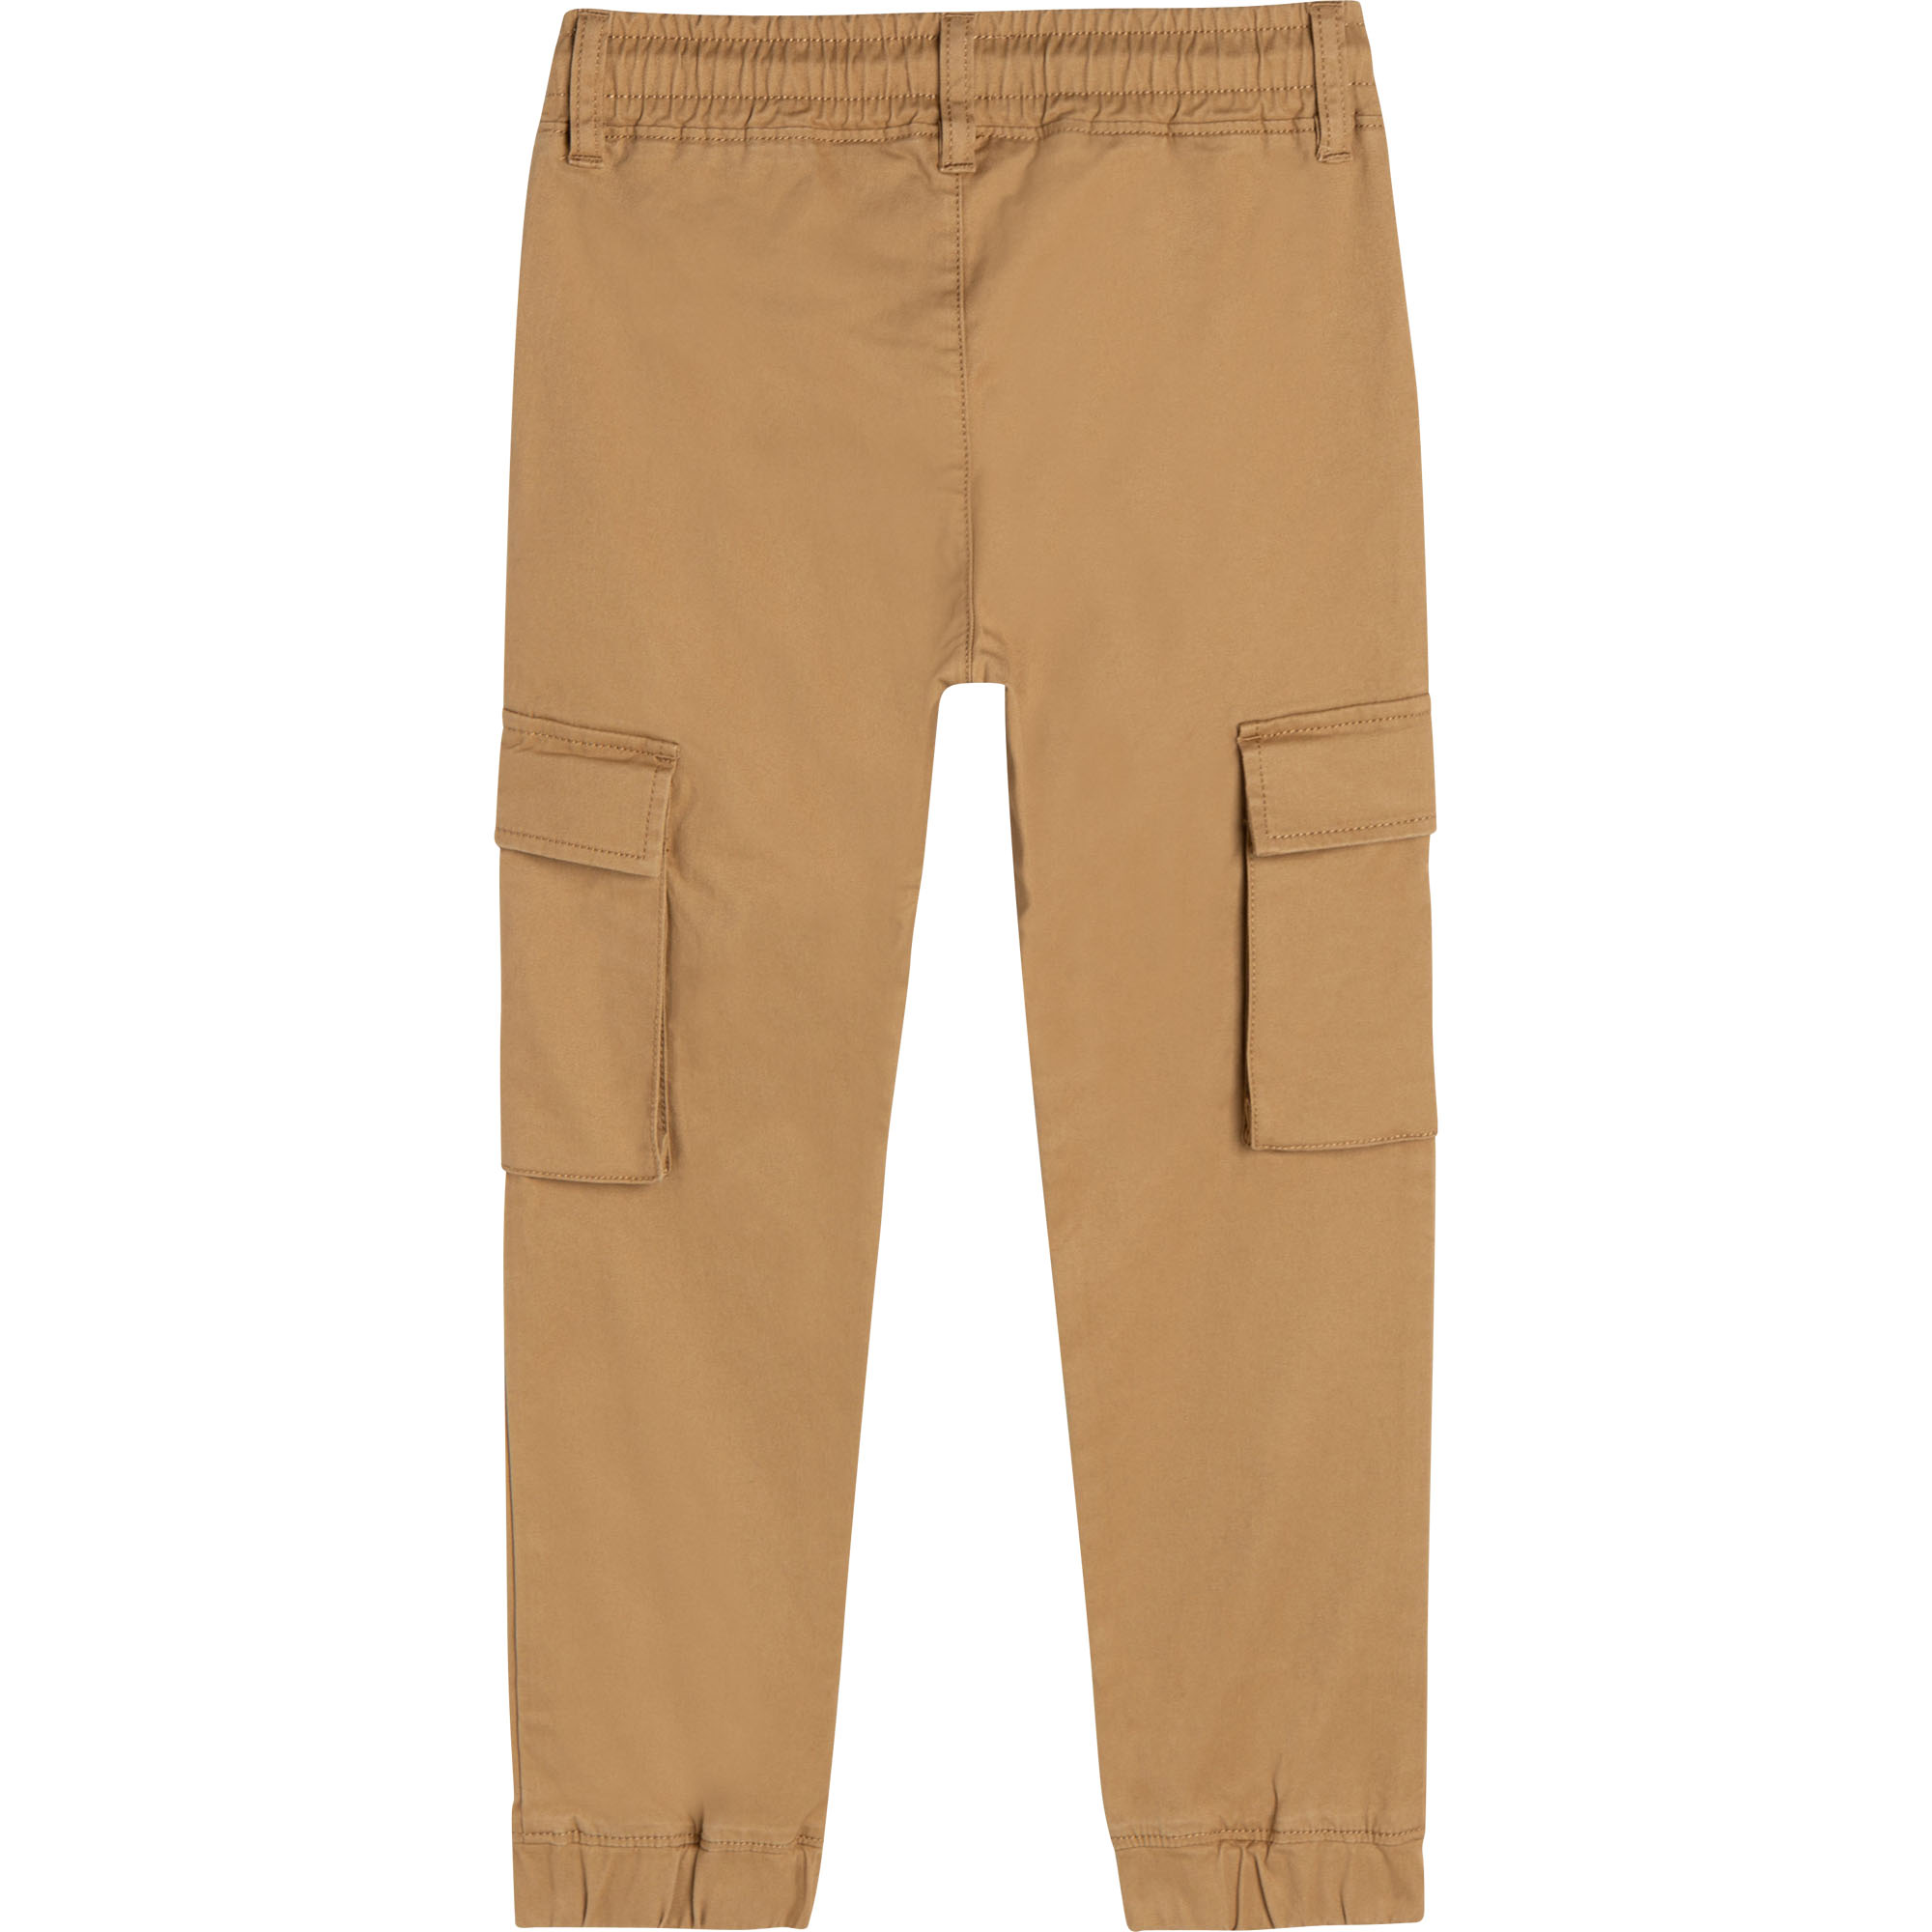 Pantaloni con elastico in vita DKNY Per RAGAZZO